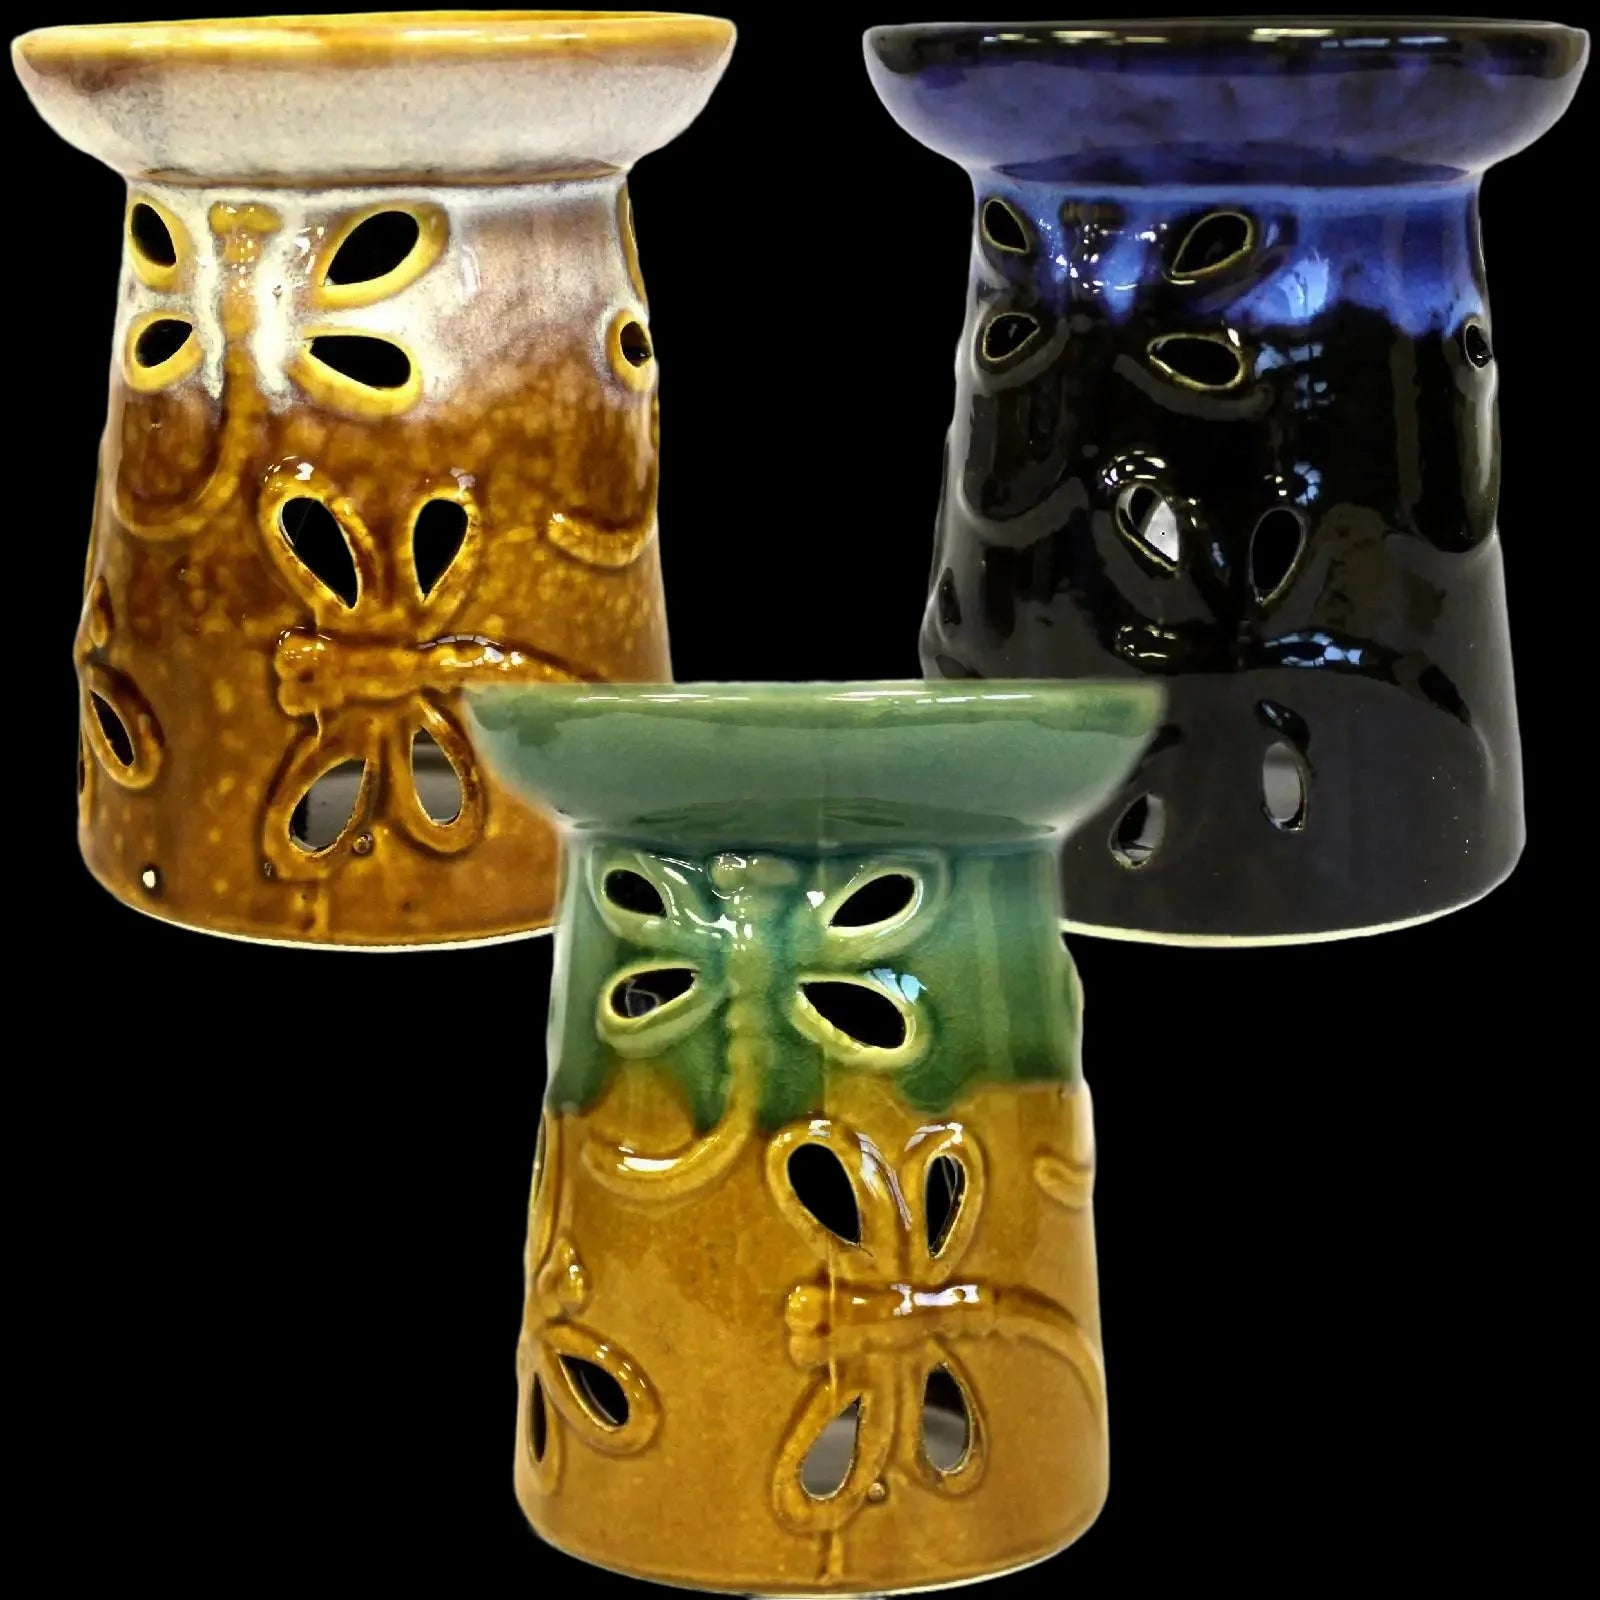 Classic Dragonfly Ceramic Oil Burners In a Rustic